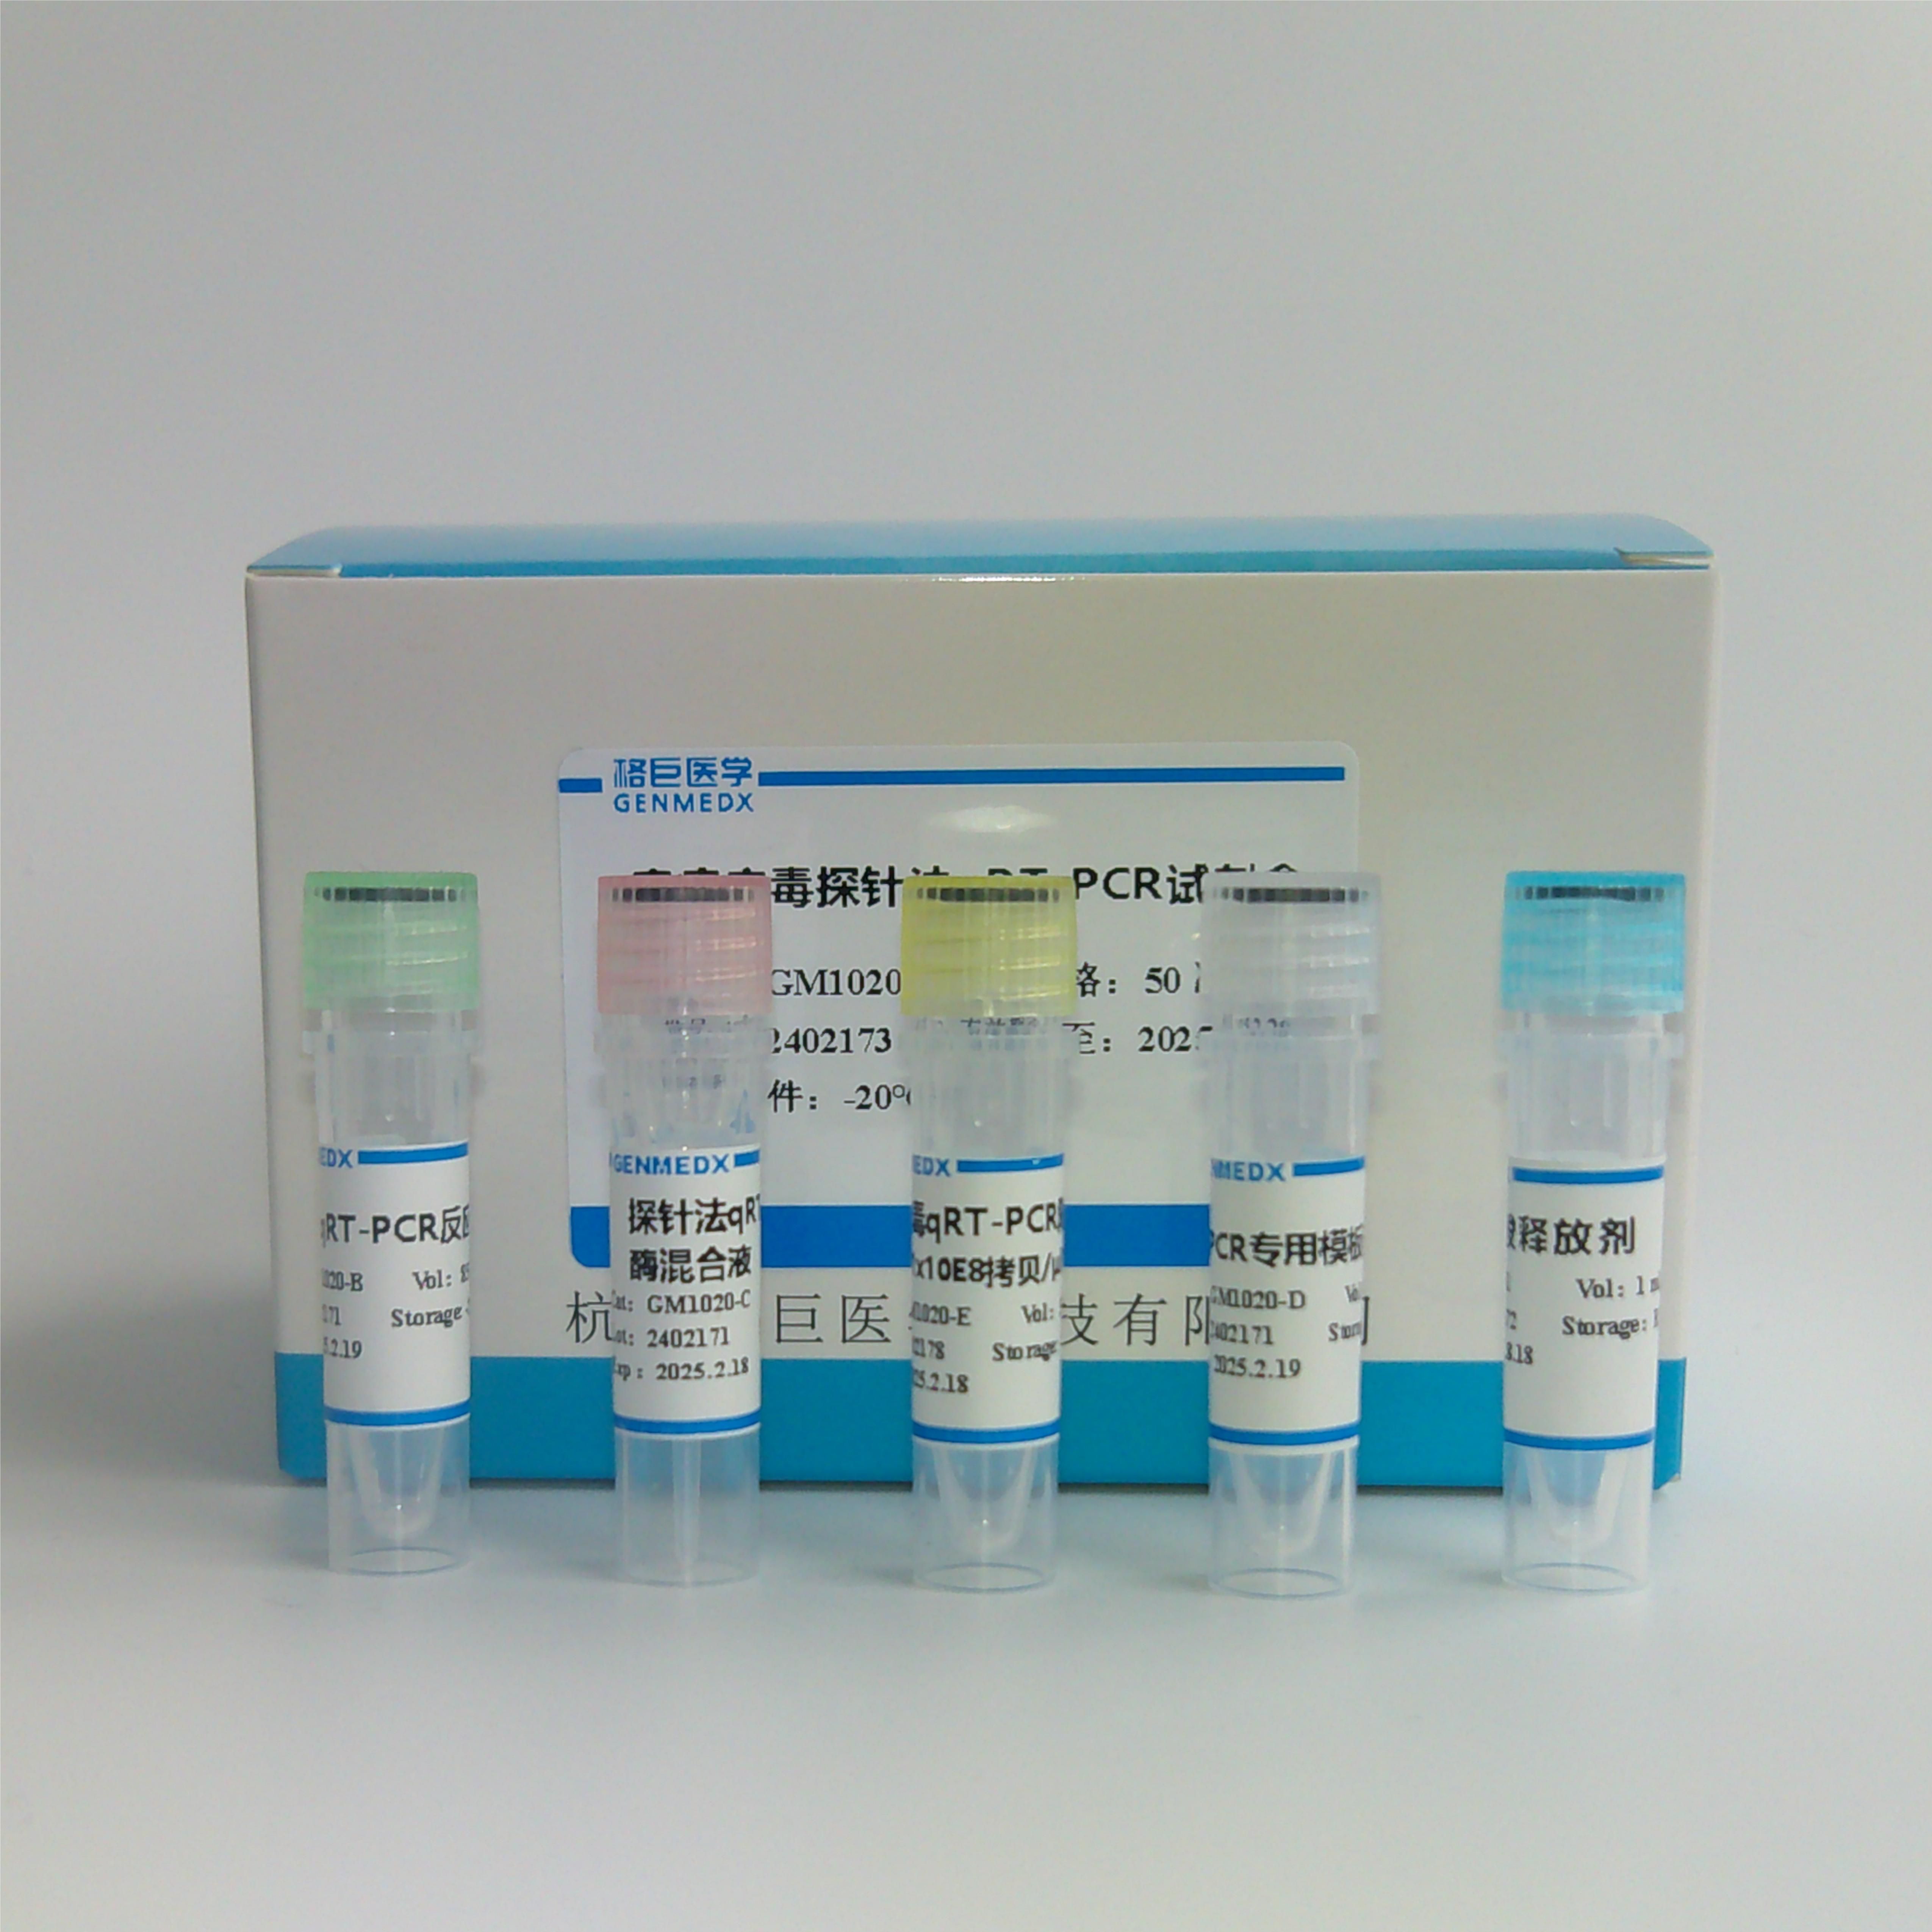 马尔尼菲青霉菌染料法荧光定量PCR试剂盒